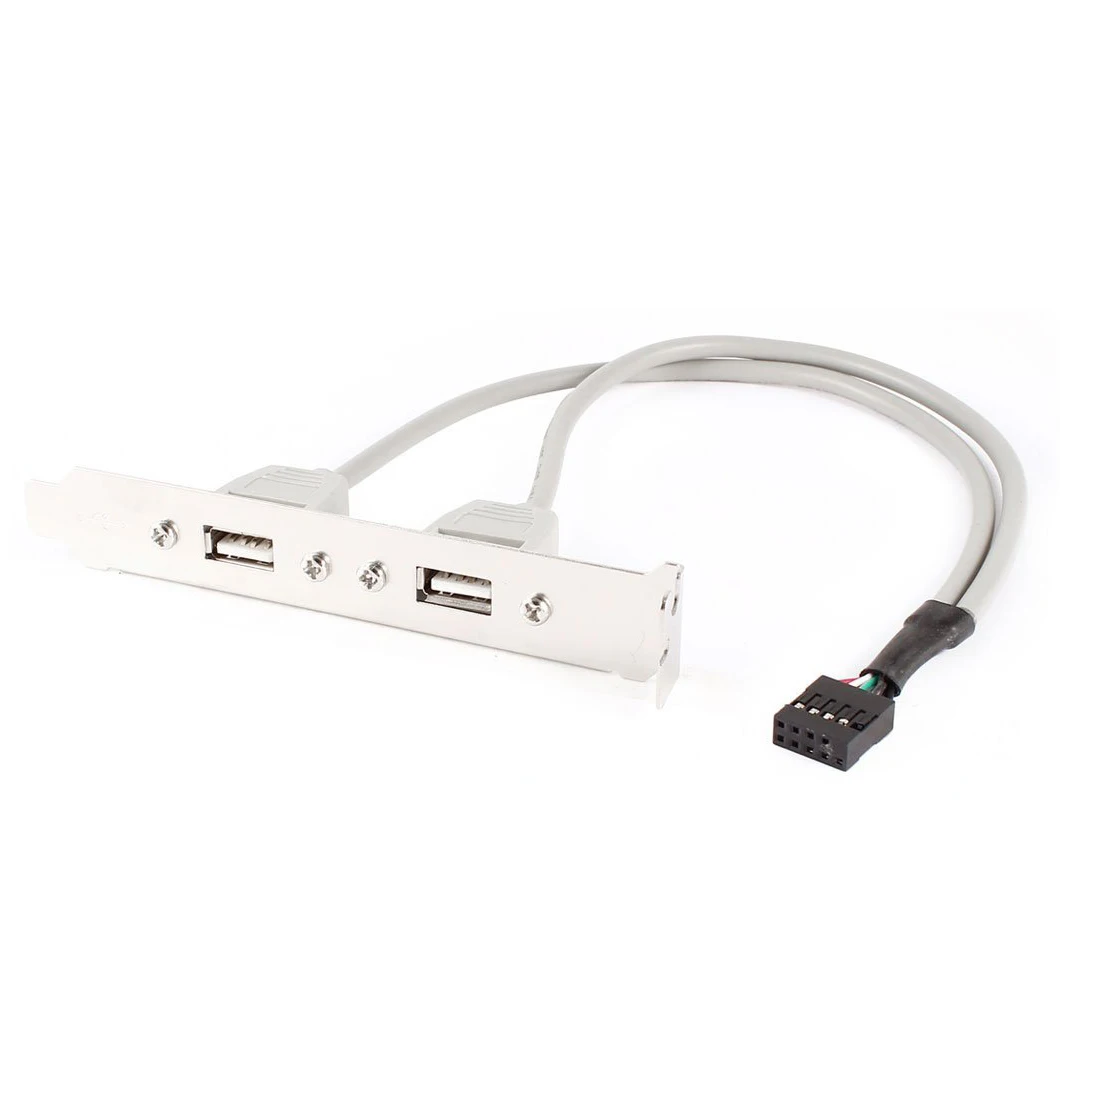 Расширение 2 вспомогательное устройство для USB 2,0 до 9 контактный разъем платы Панель кронштейн